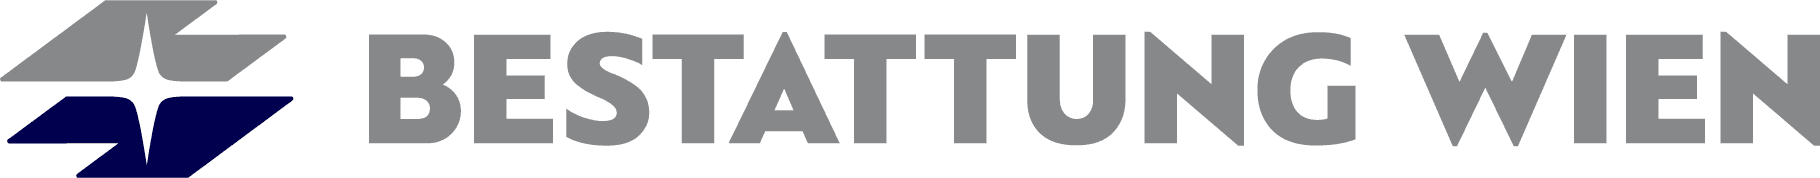 Logo BESTATTUNG WIEN - Kundenservice Brigittenau